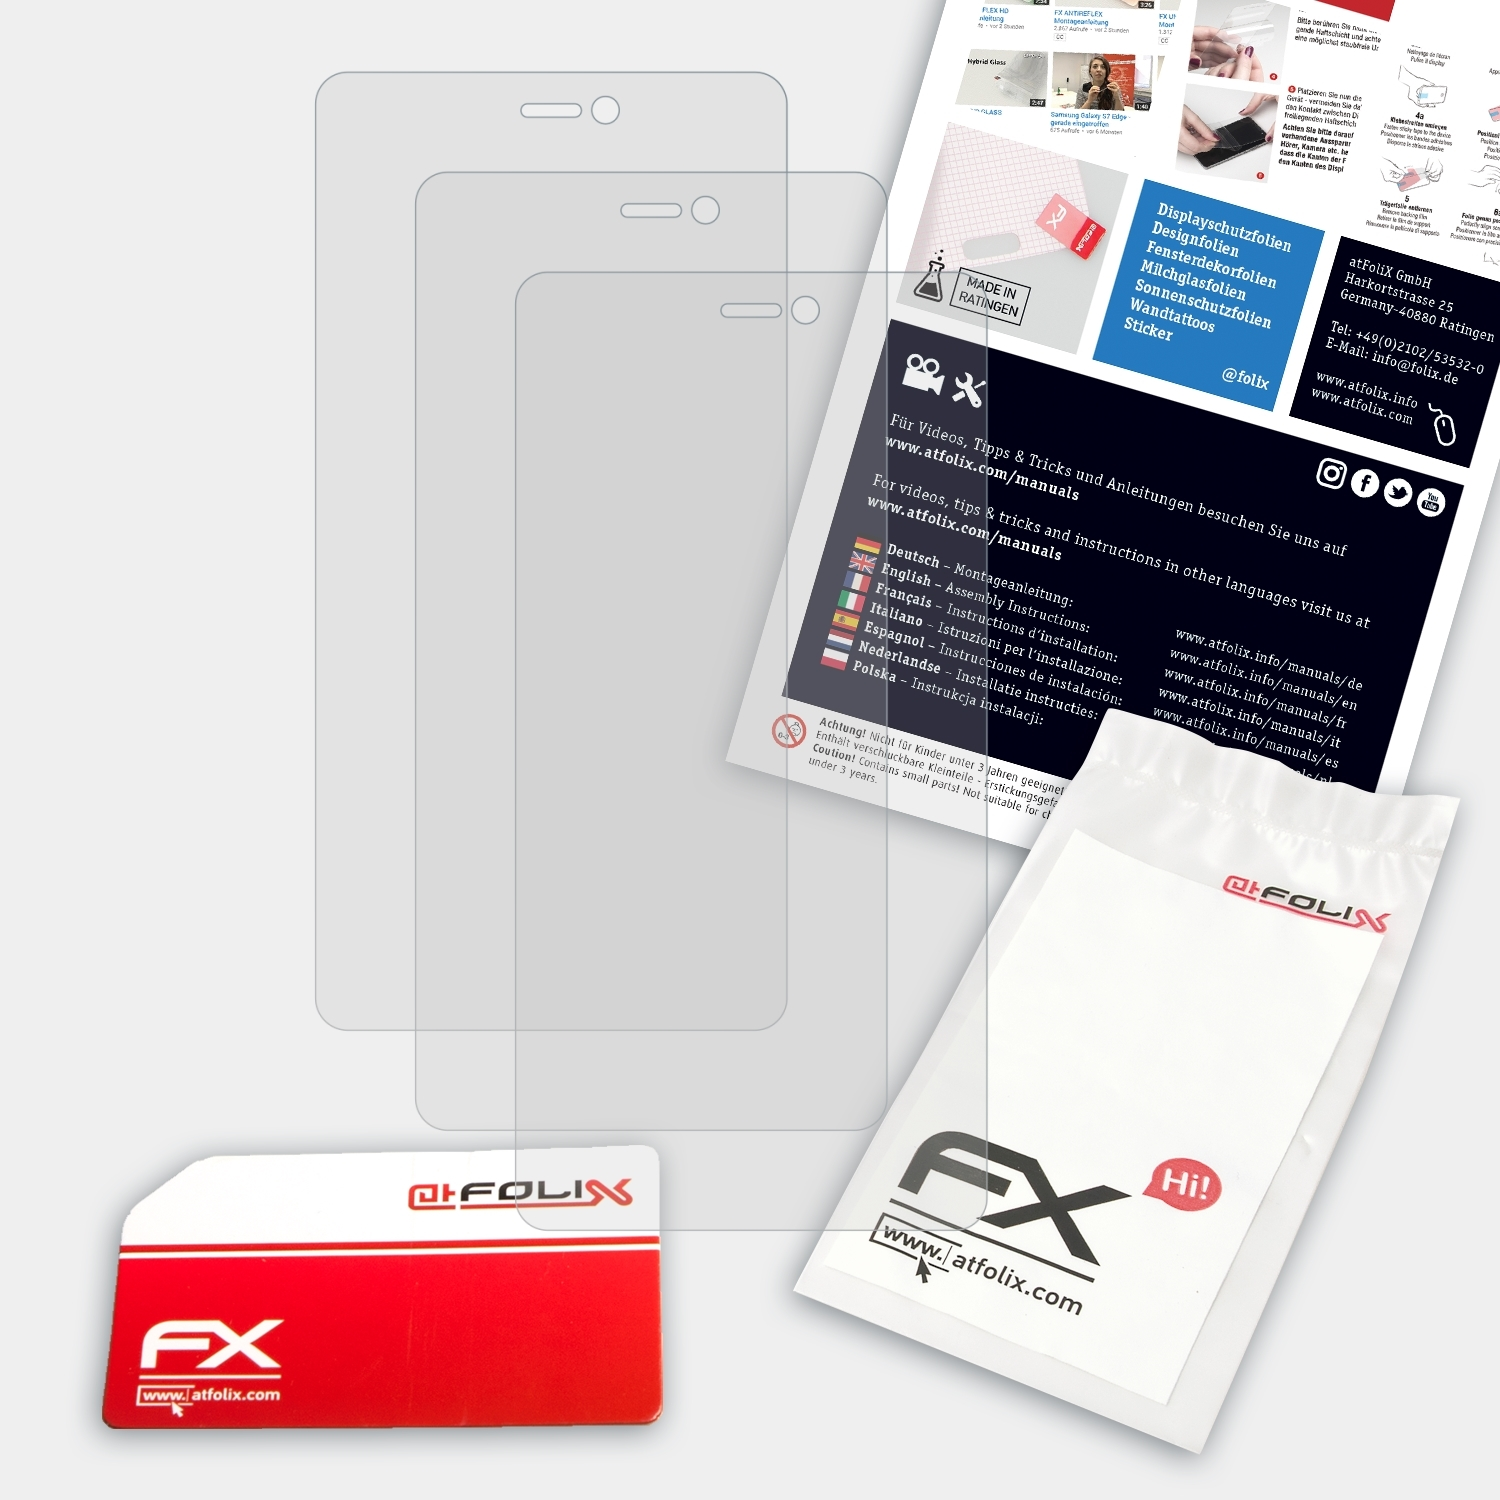 3x FX-Antireflex ATFOLIX Mi4c) Xiaomi Displayschutz(für